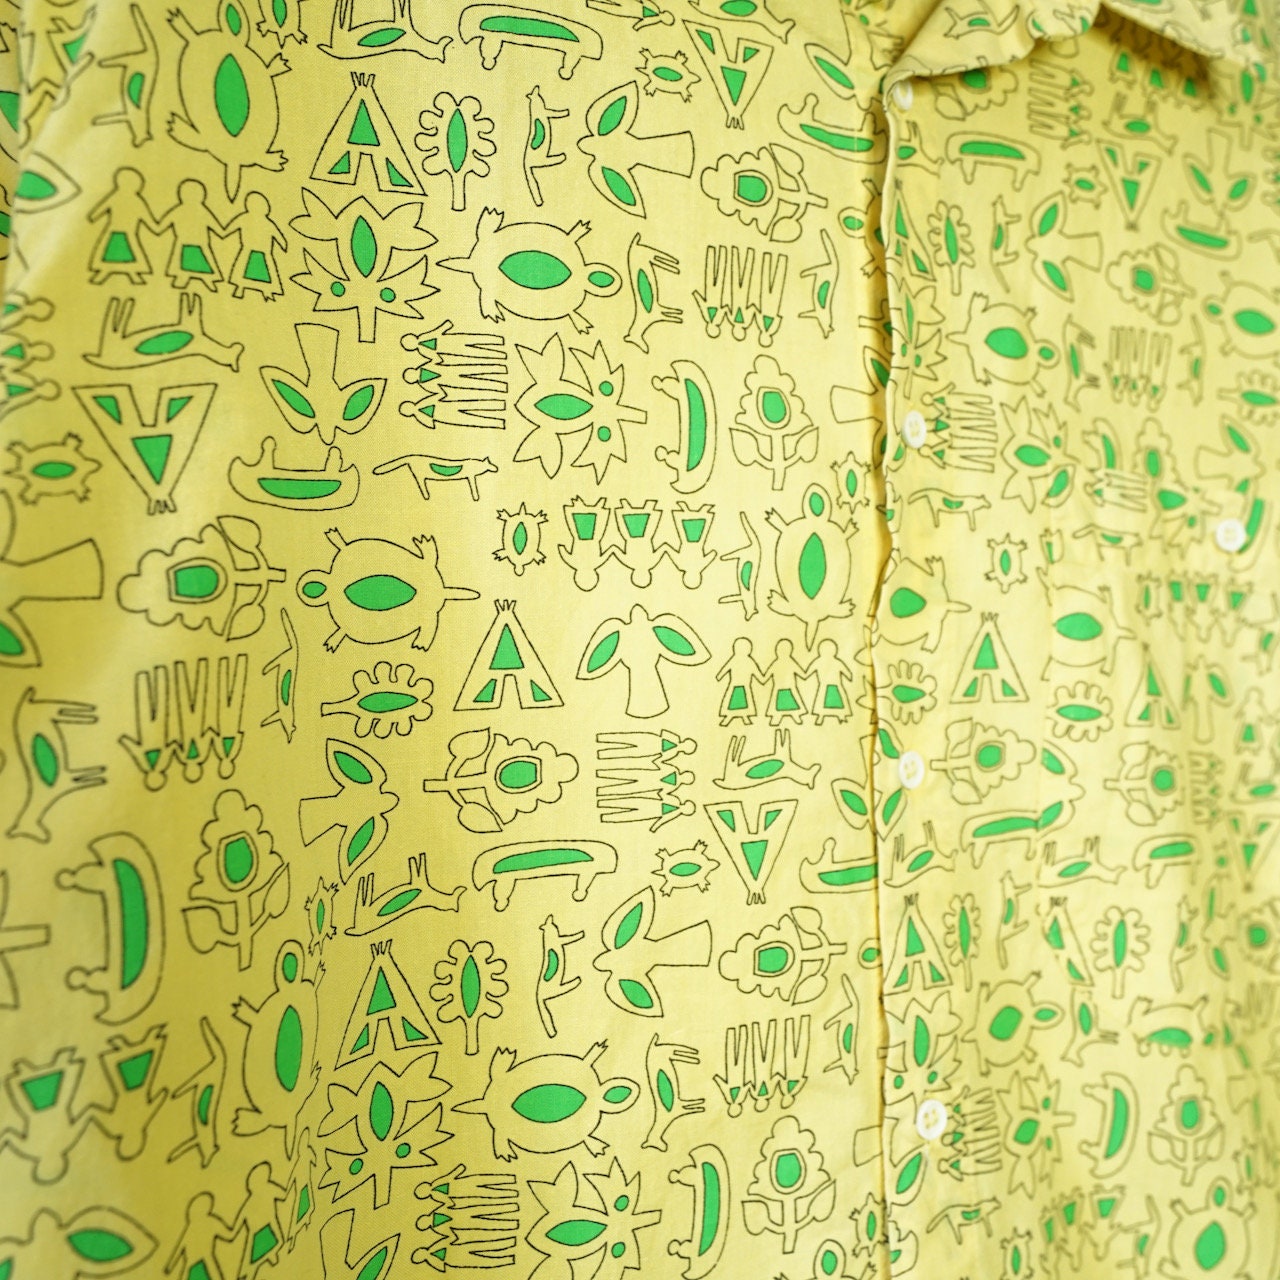 Vintage yellow short sleeved button up Shirt size M-L green pattern summer shirt festival shirt